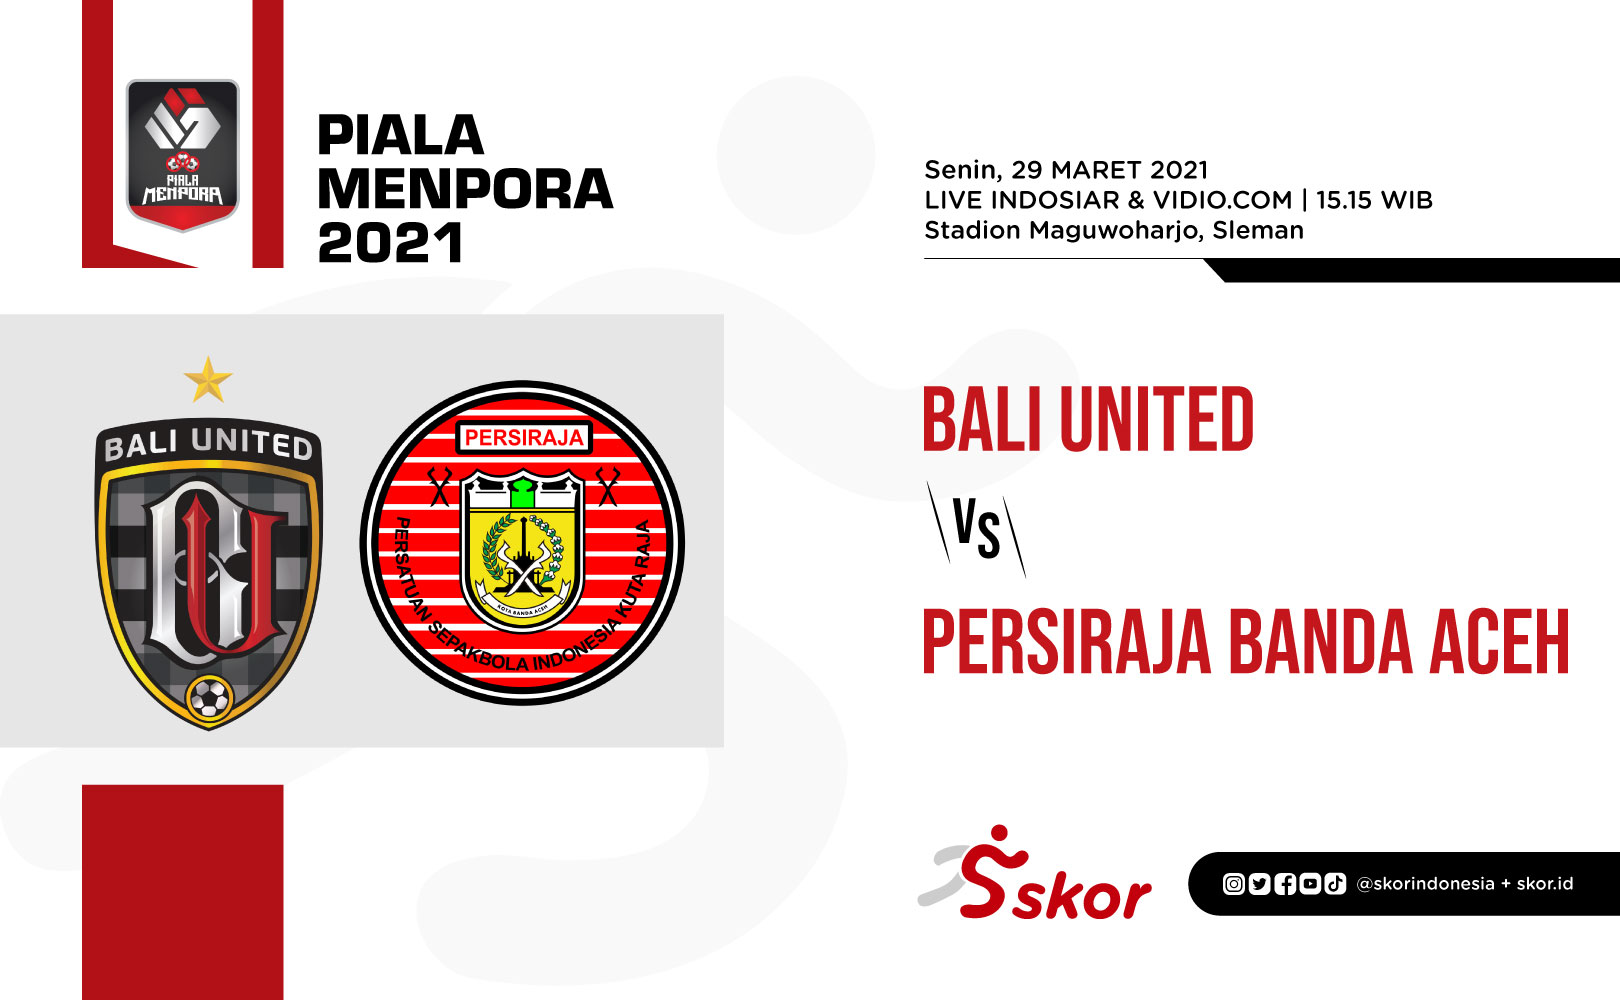 Man of The Match Bali United vs Persiraja Banda Aceh: Rizky Pellu